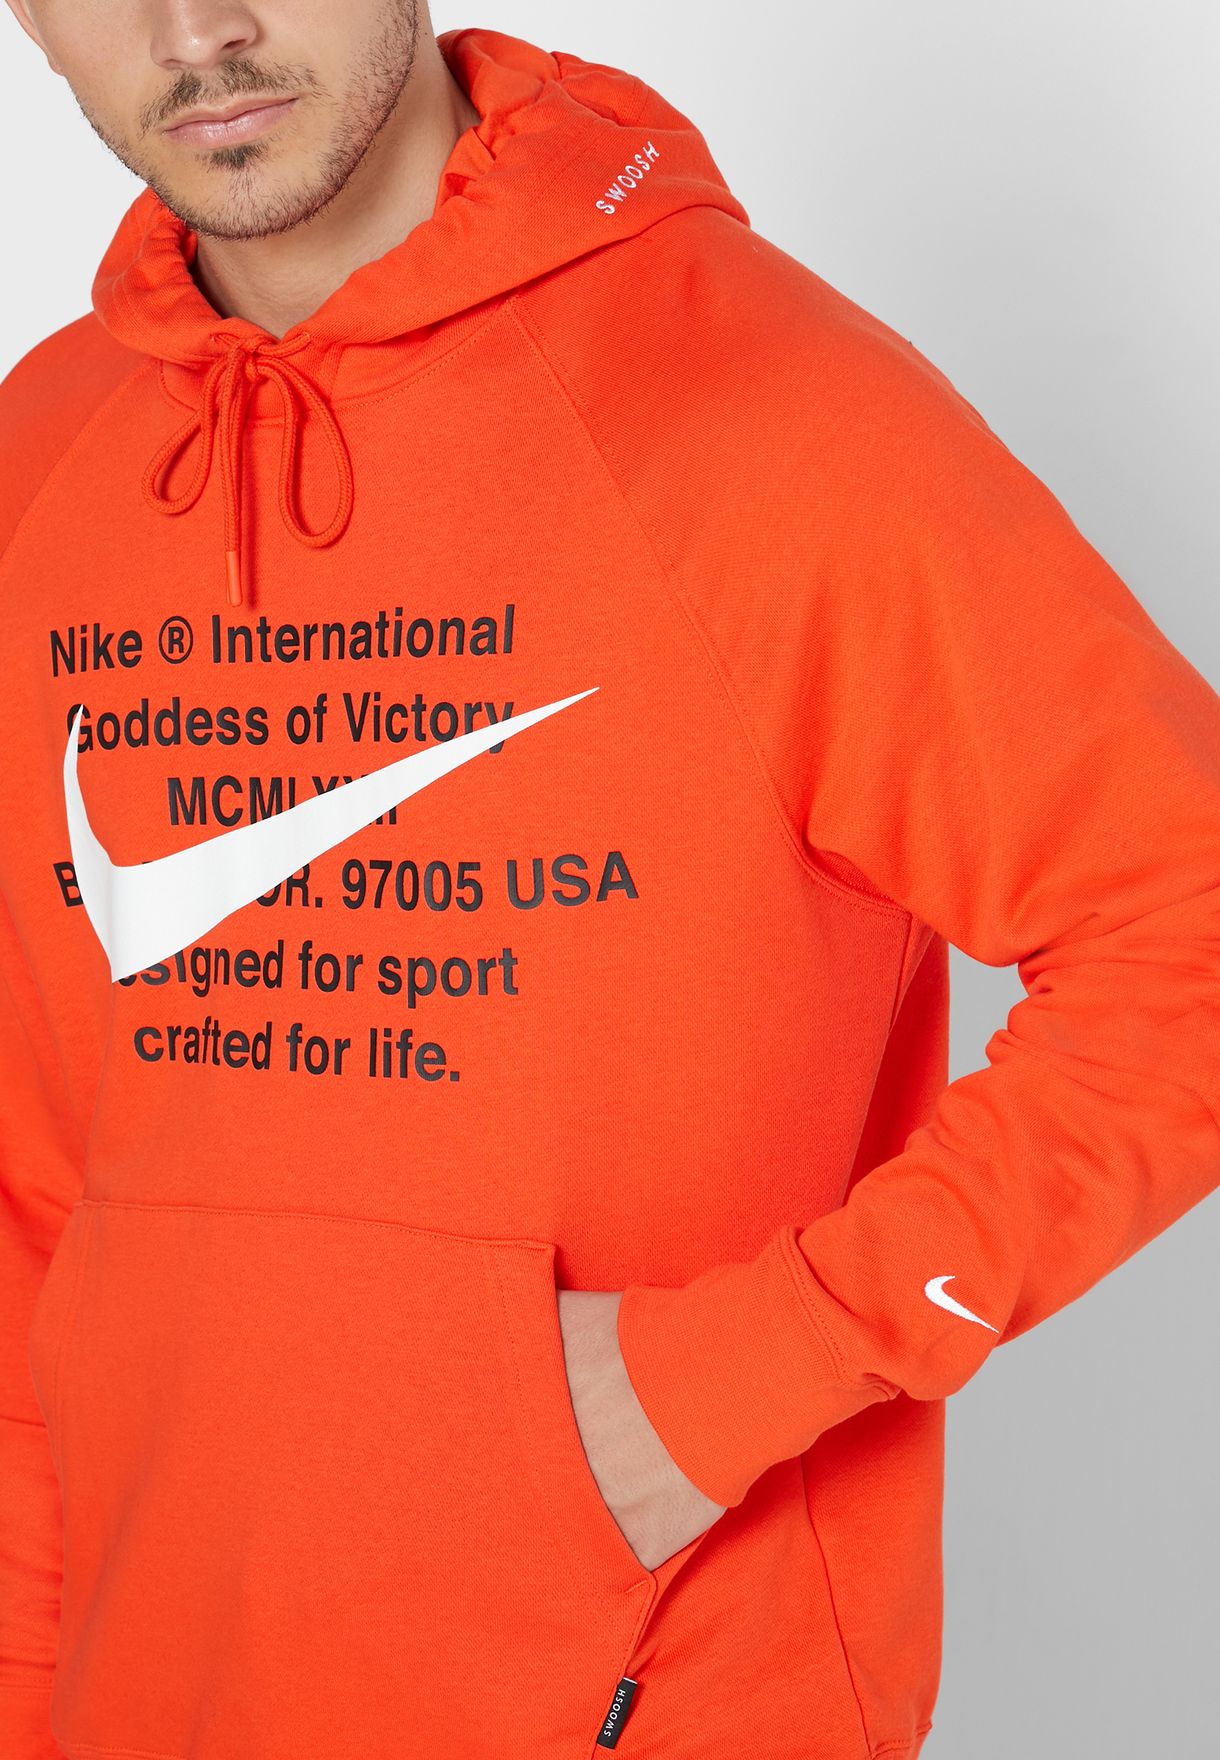 nike orange swoosh hoodie